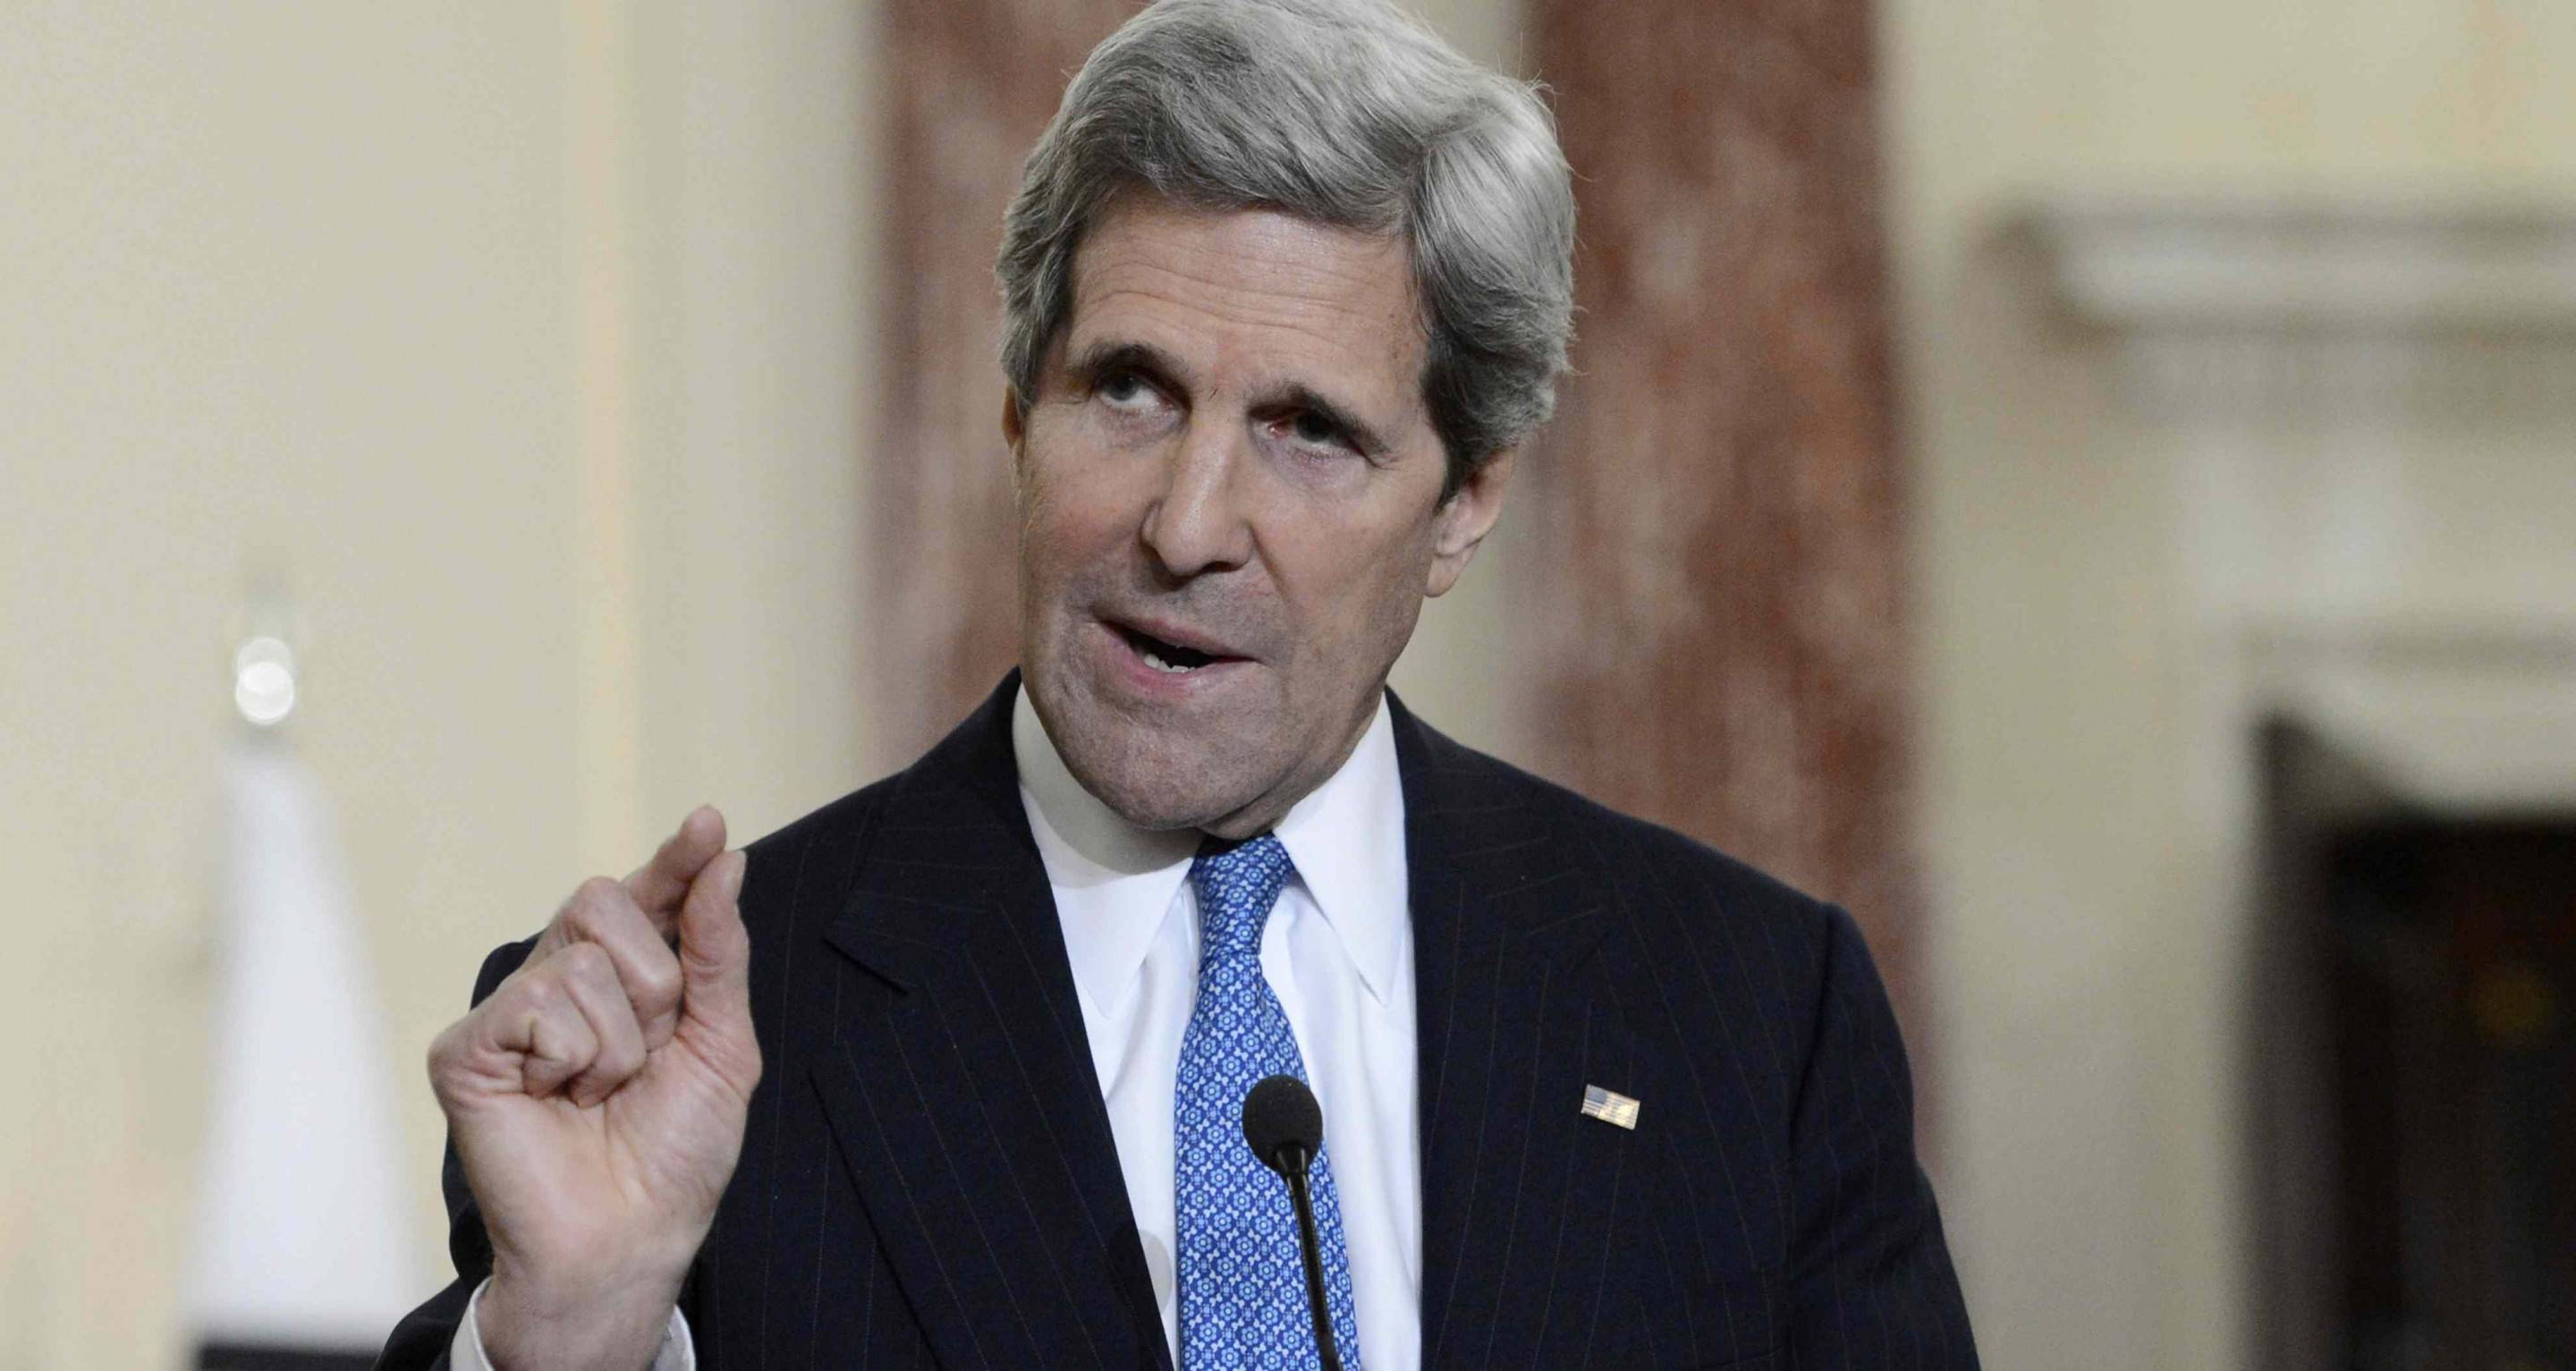 Kerry llega a La Habana para ceremonia oficial en embajada